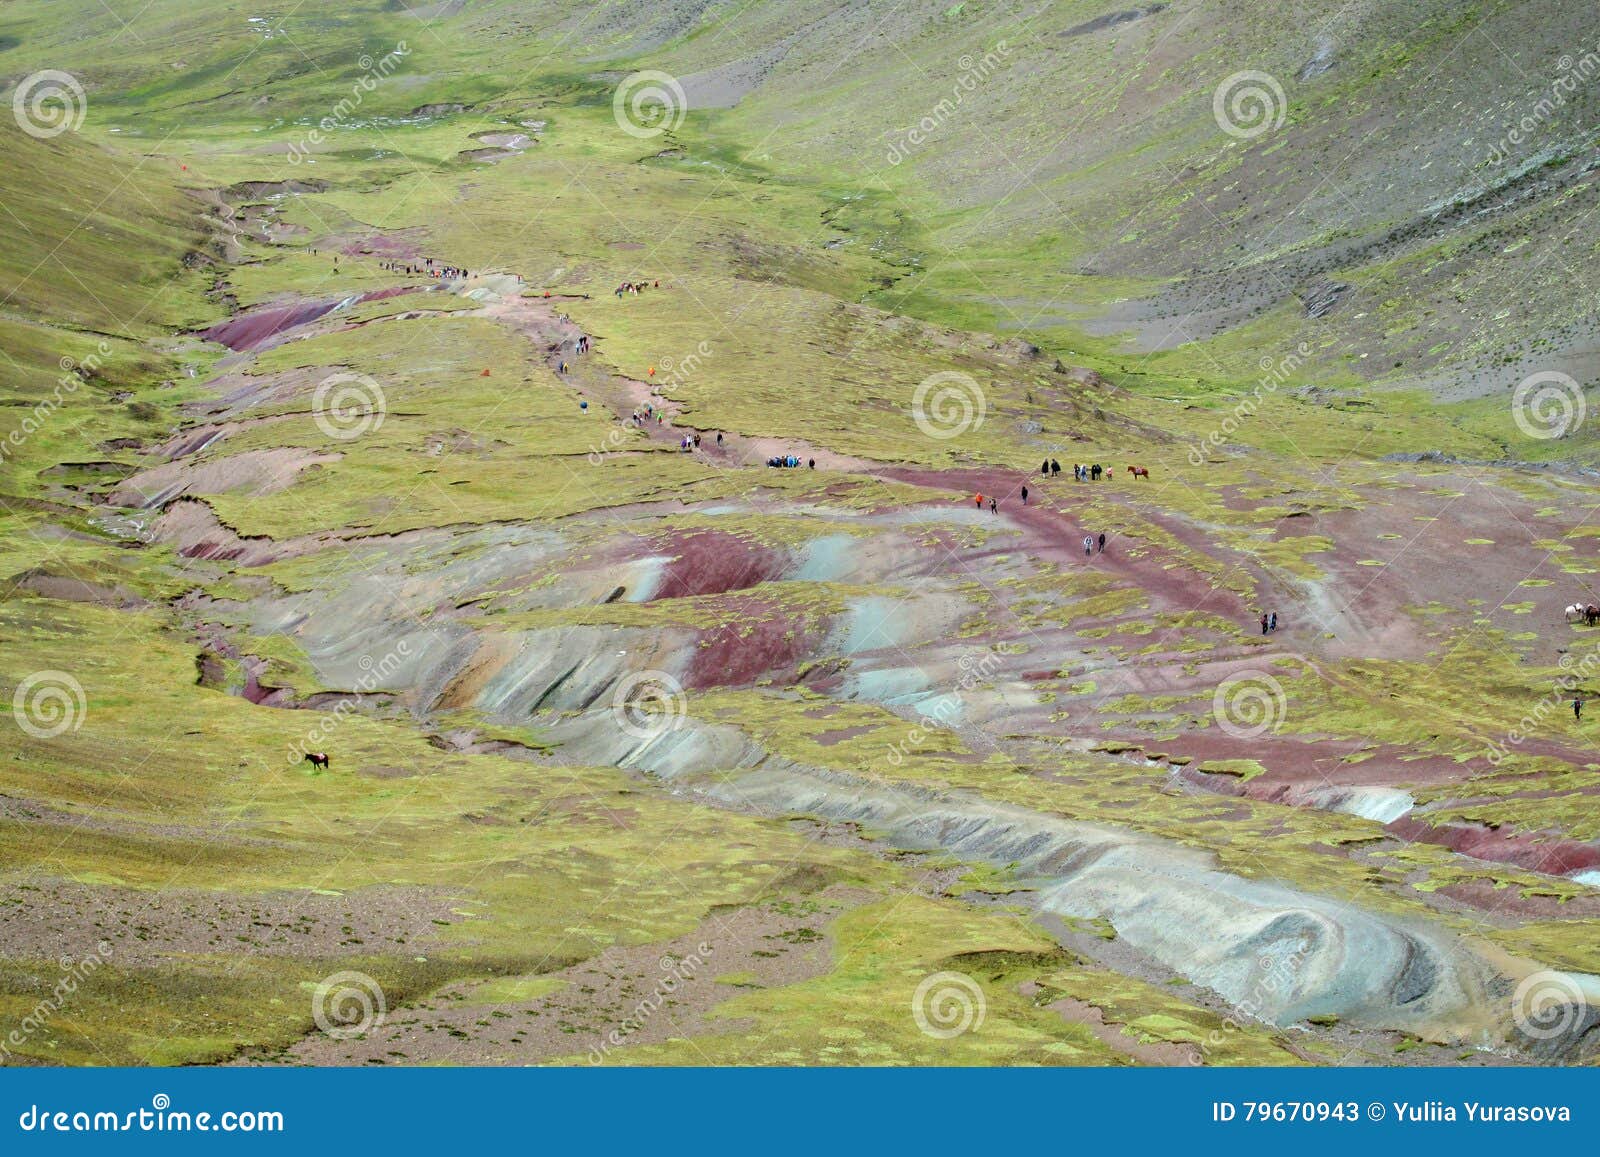 area of montana de siete colores near cuzco